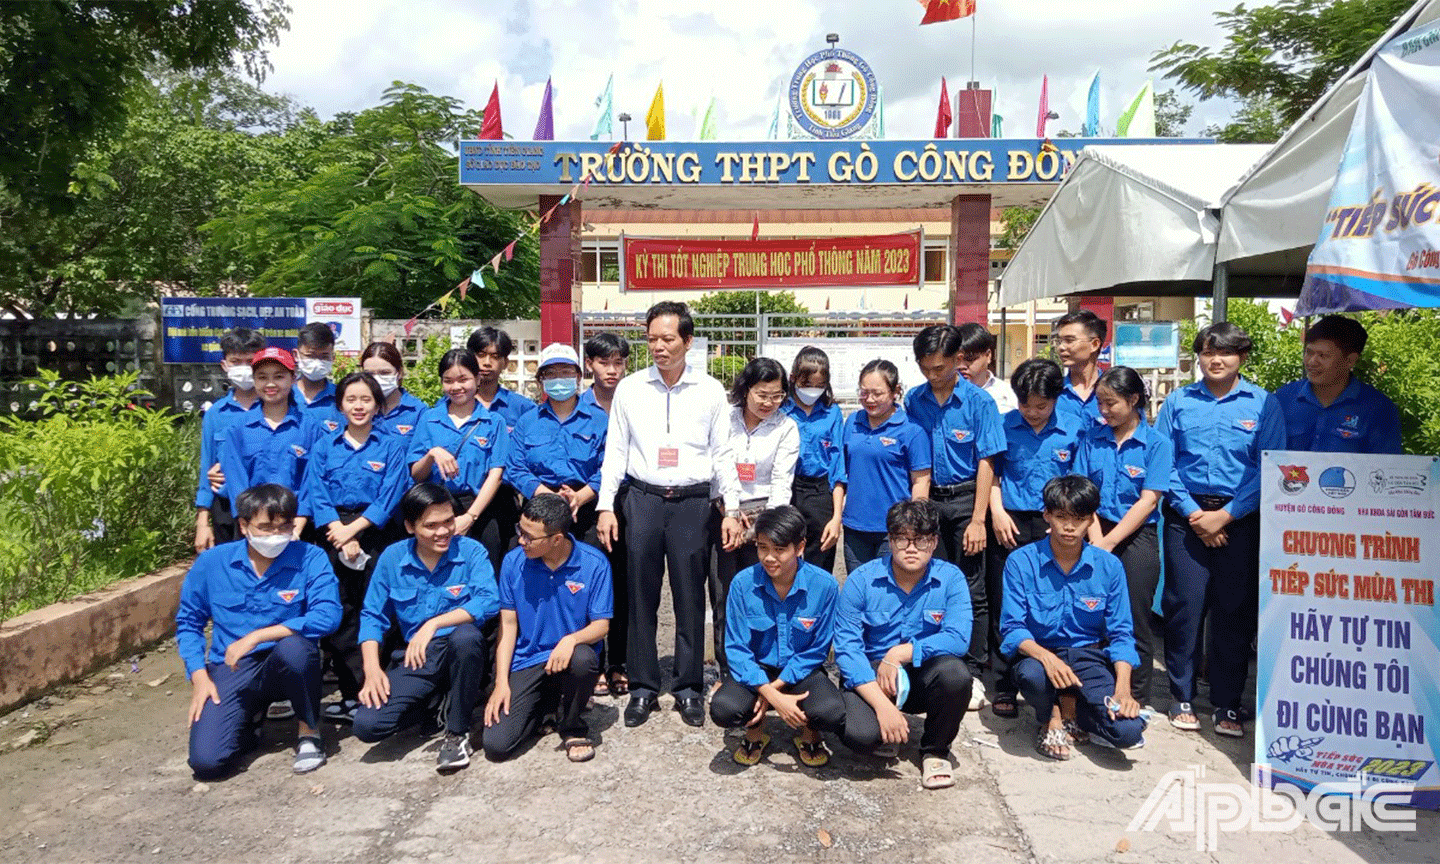 Phó Chủ tịch UBND tỉnh Nguyễn Thành Diệu chụp ảnh lưu niệm cùng đội hình thanh niên tình nguyện hỗ trợ thí sinh tham gia 